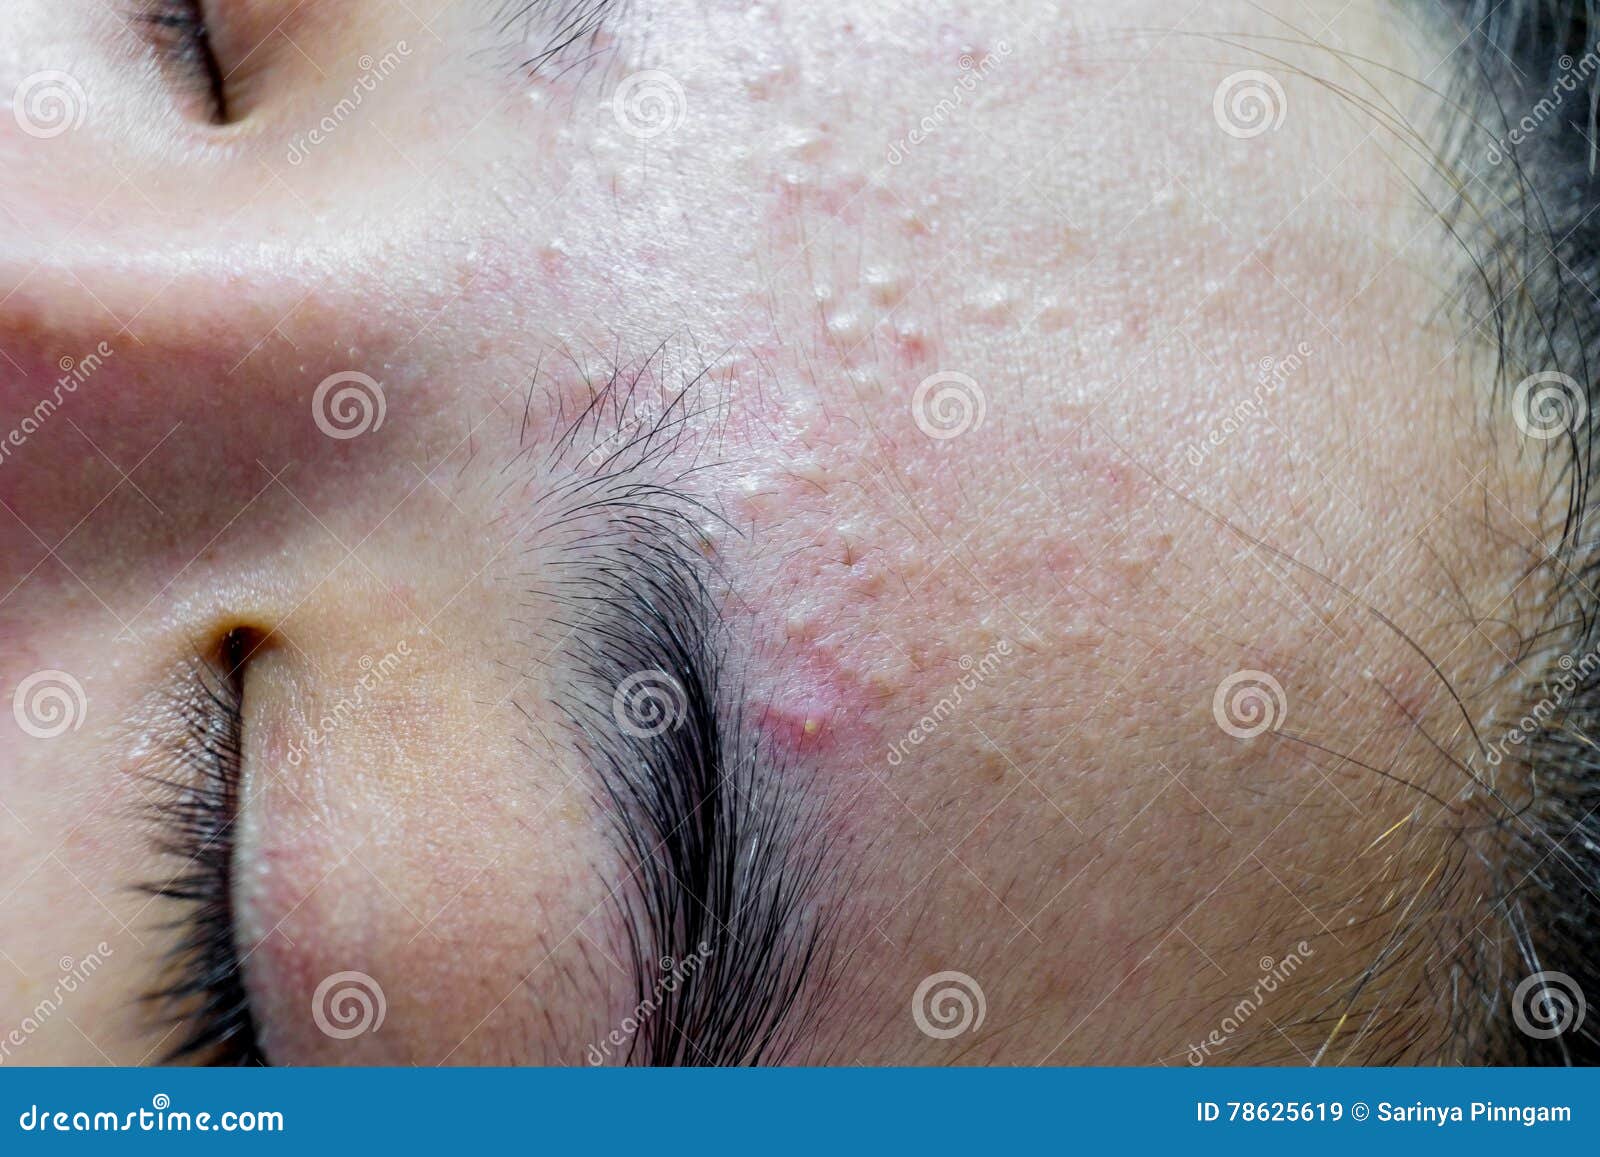 closeup acne face women